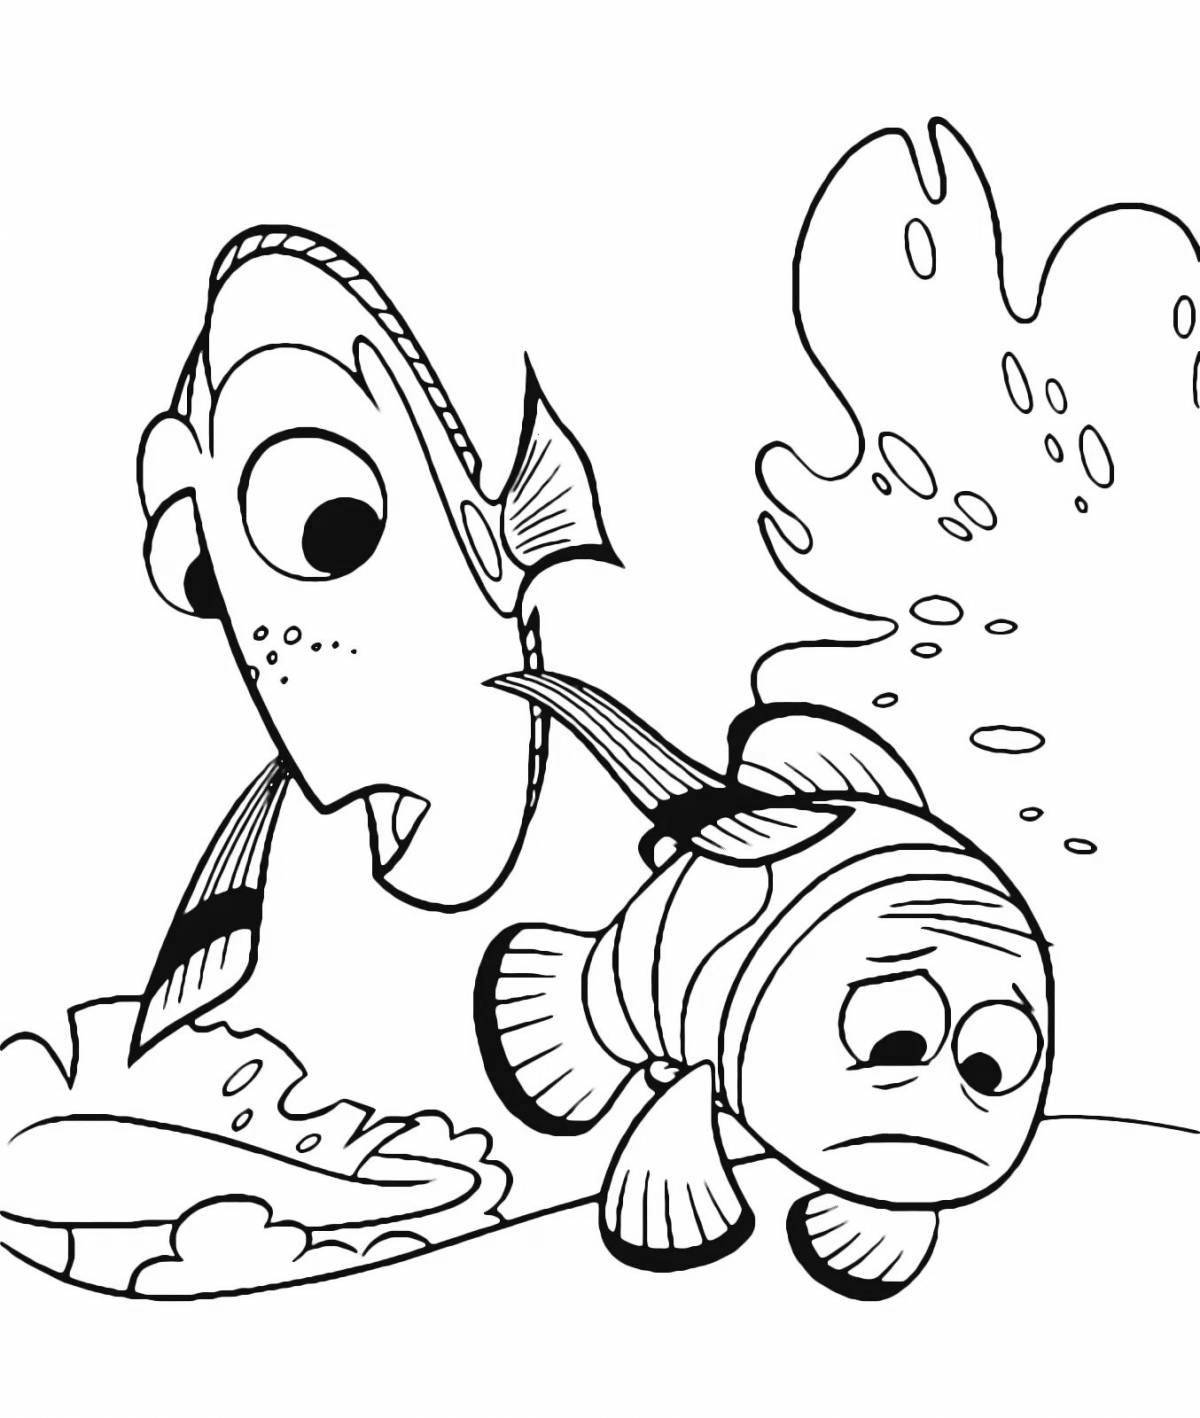 Nemo and dory #3